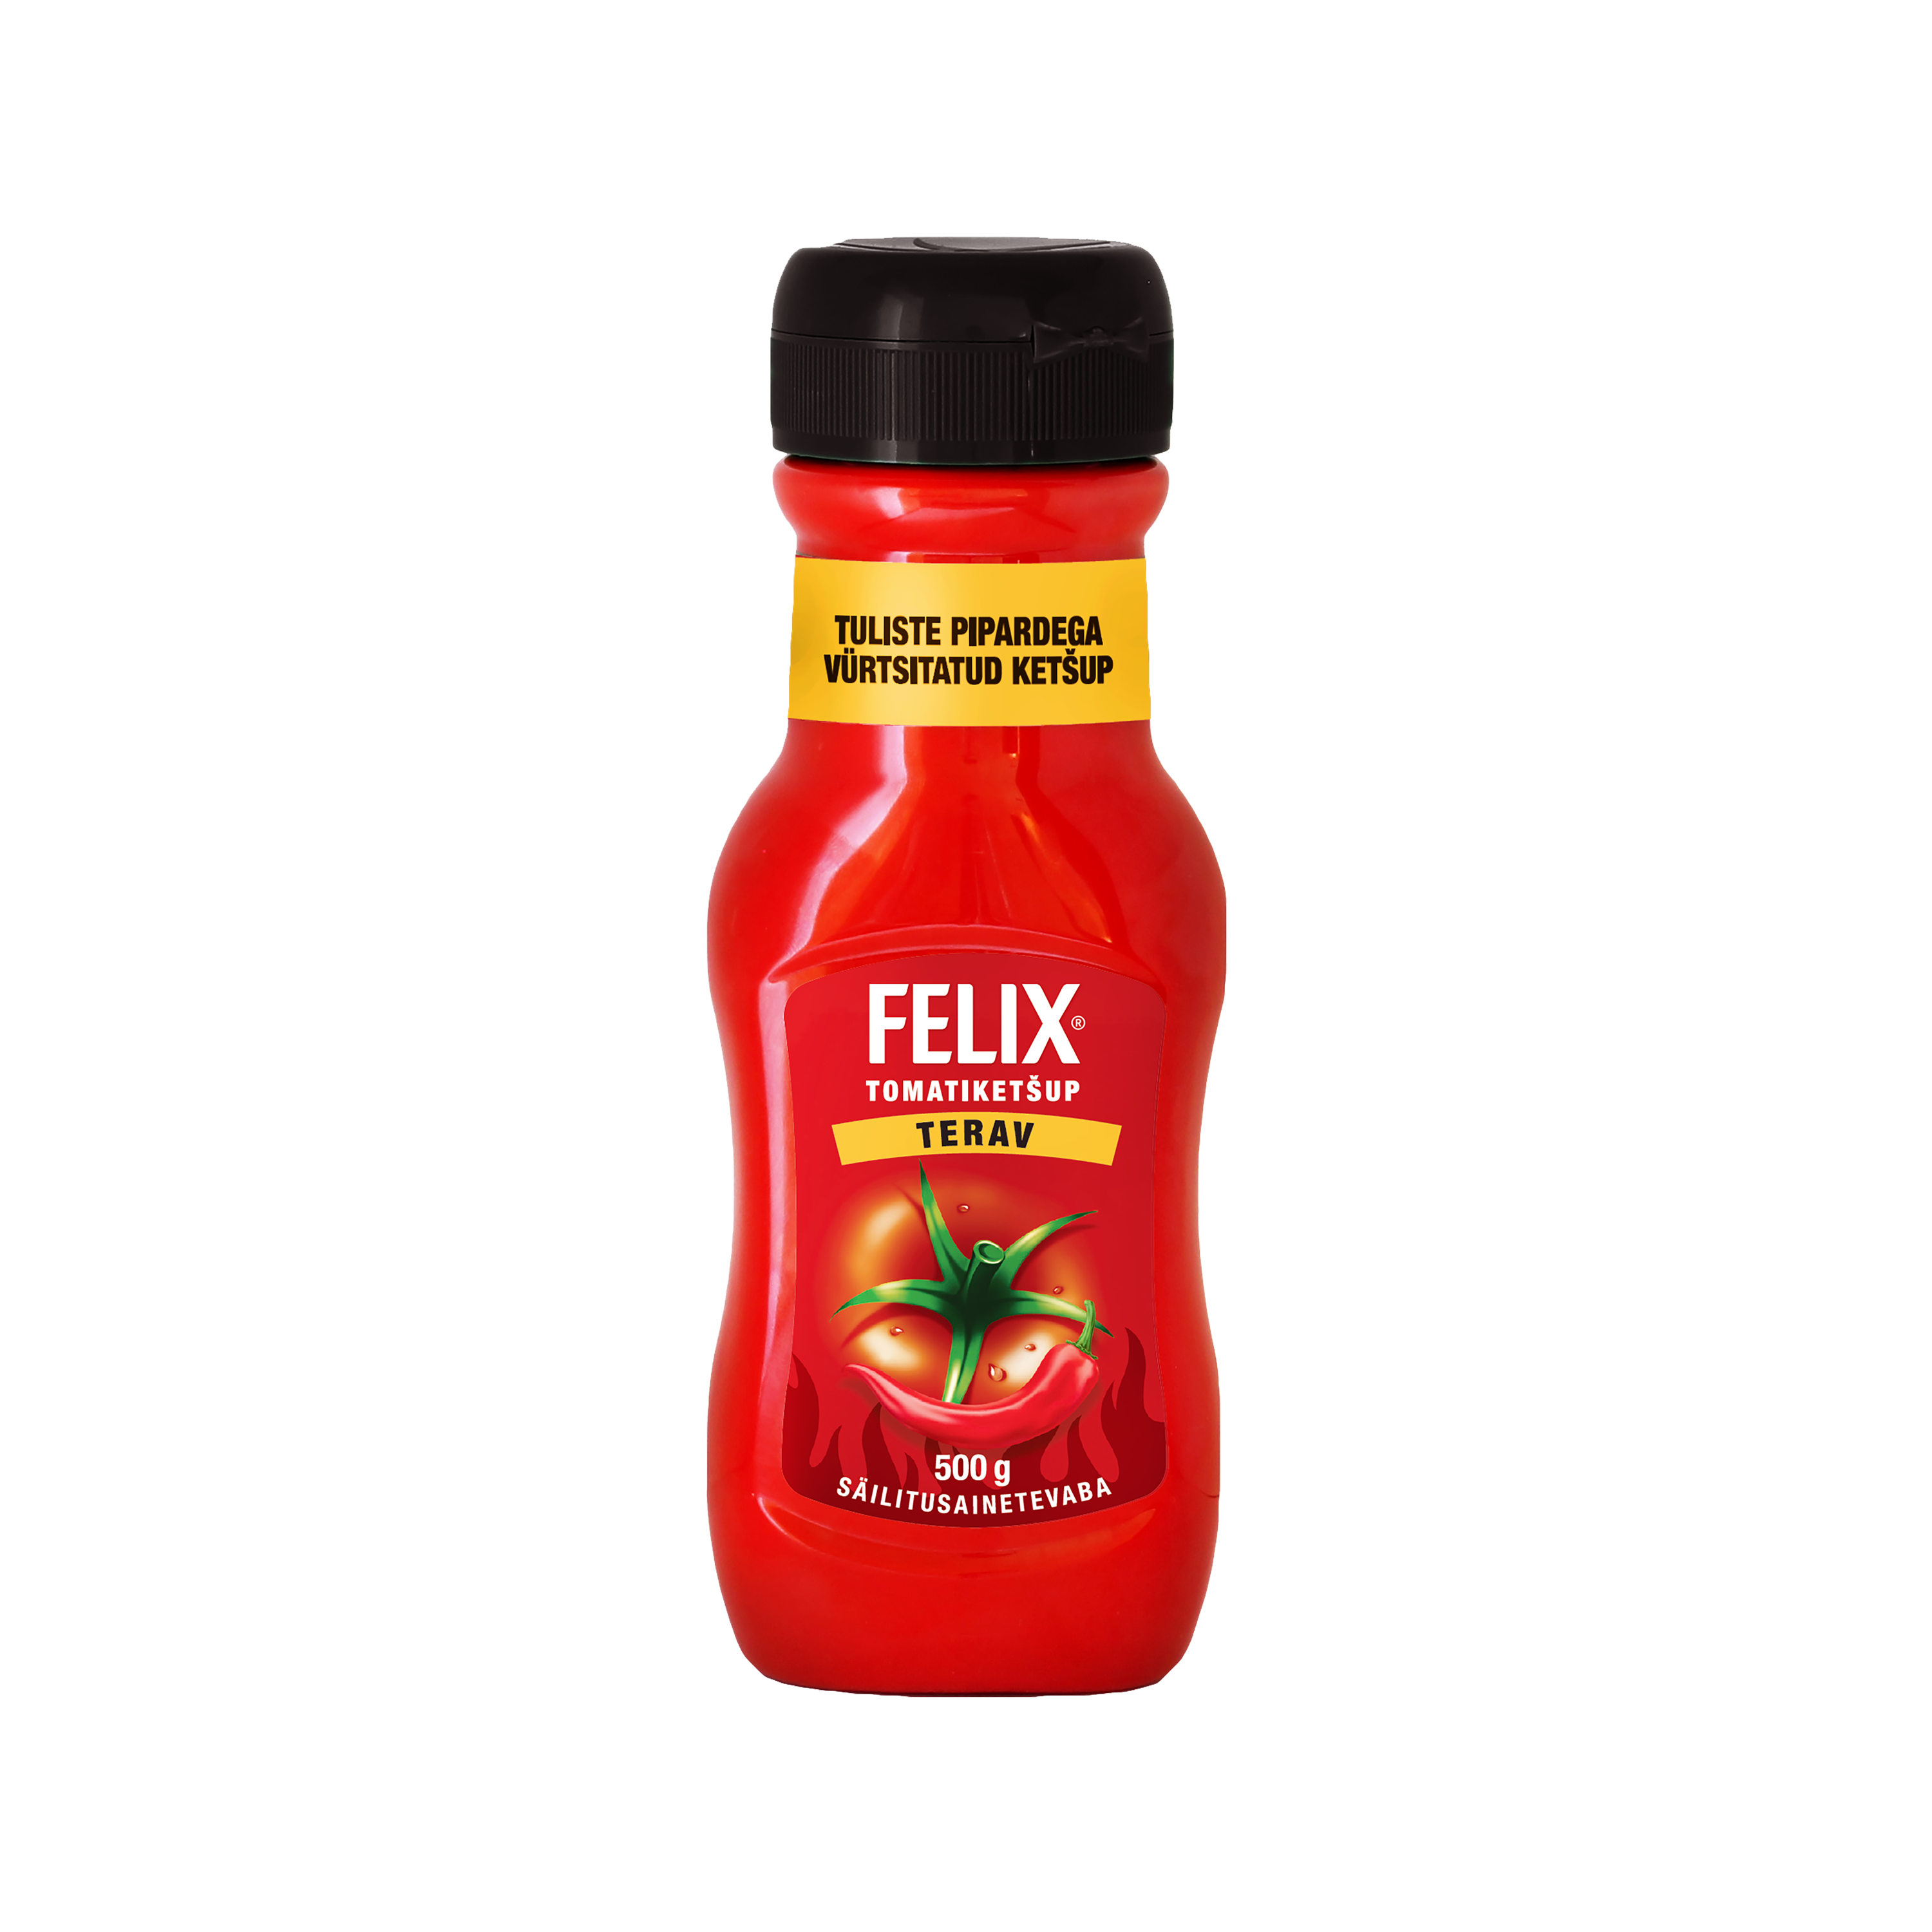 Felix Terav tomatiketšup 500g